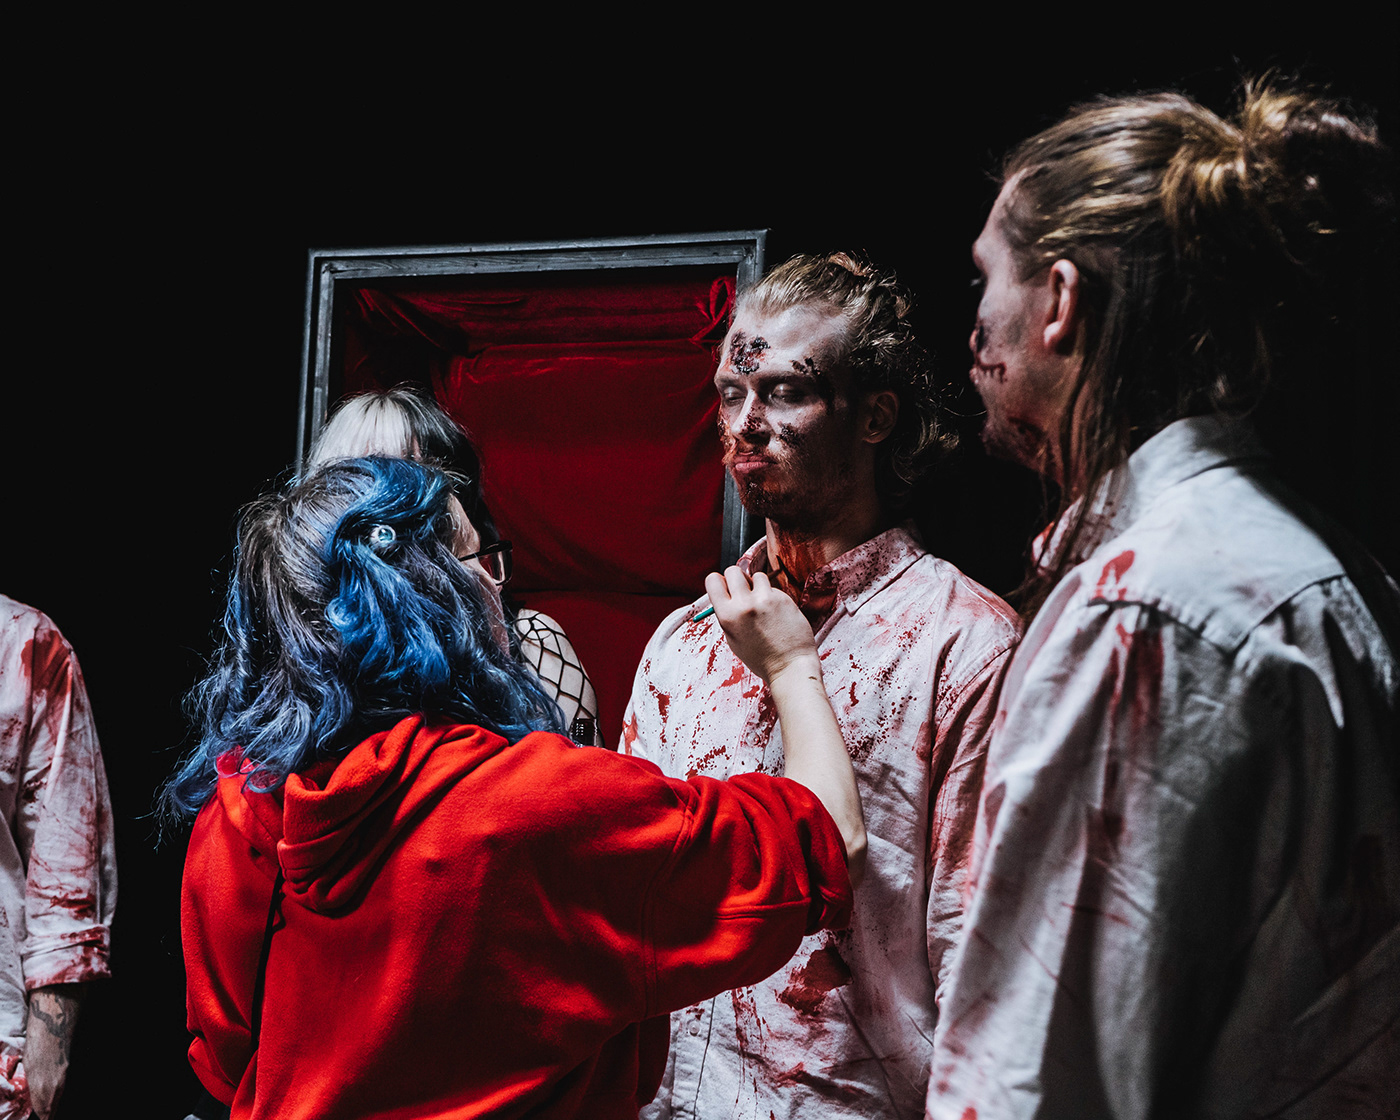 makeup makeup artist zombie gore blood music video SFX costume horror sfx makeup